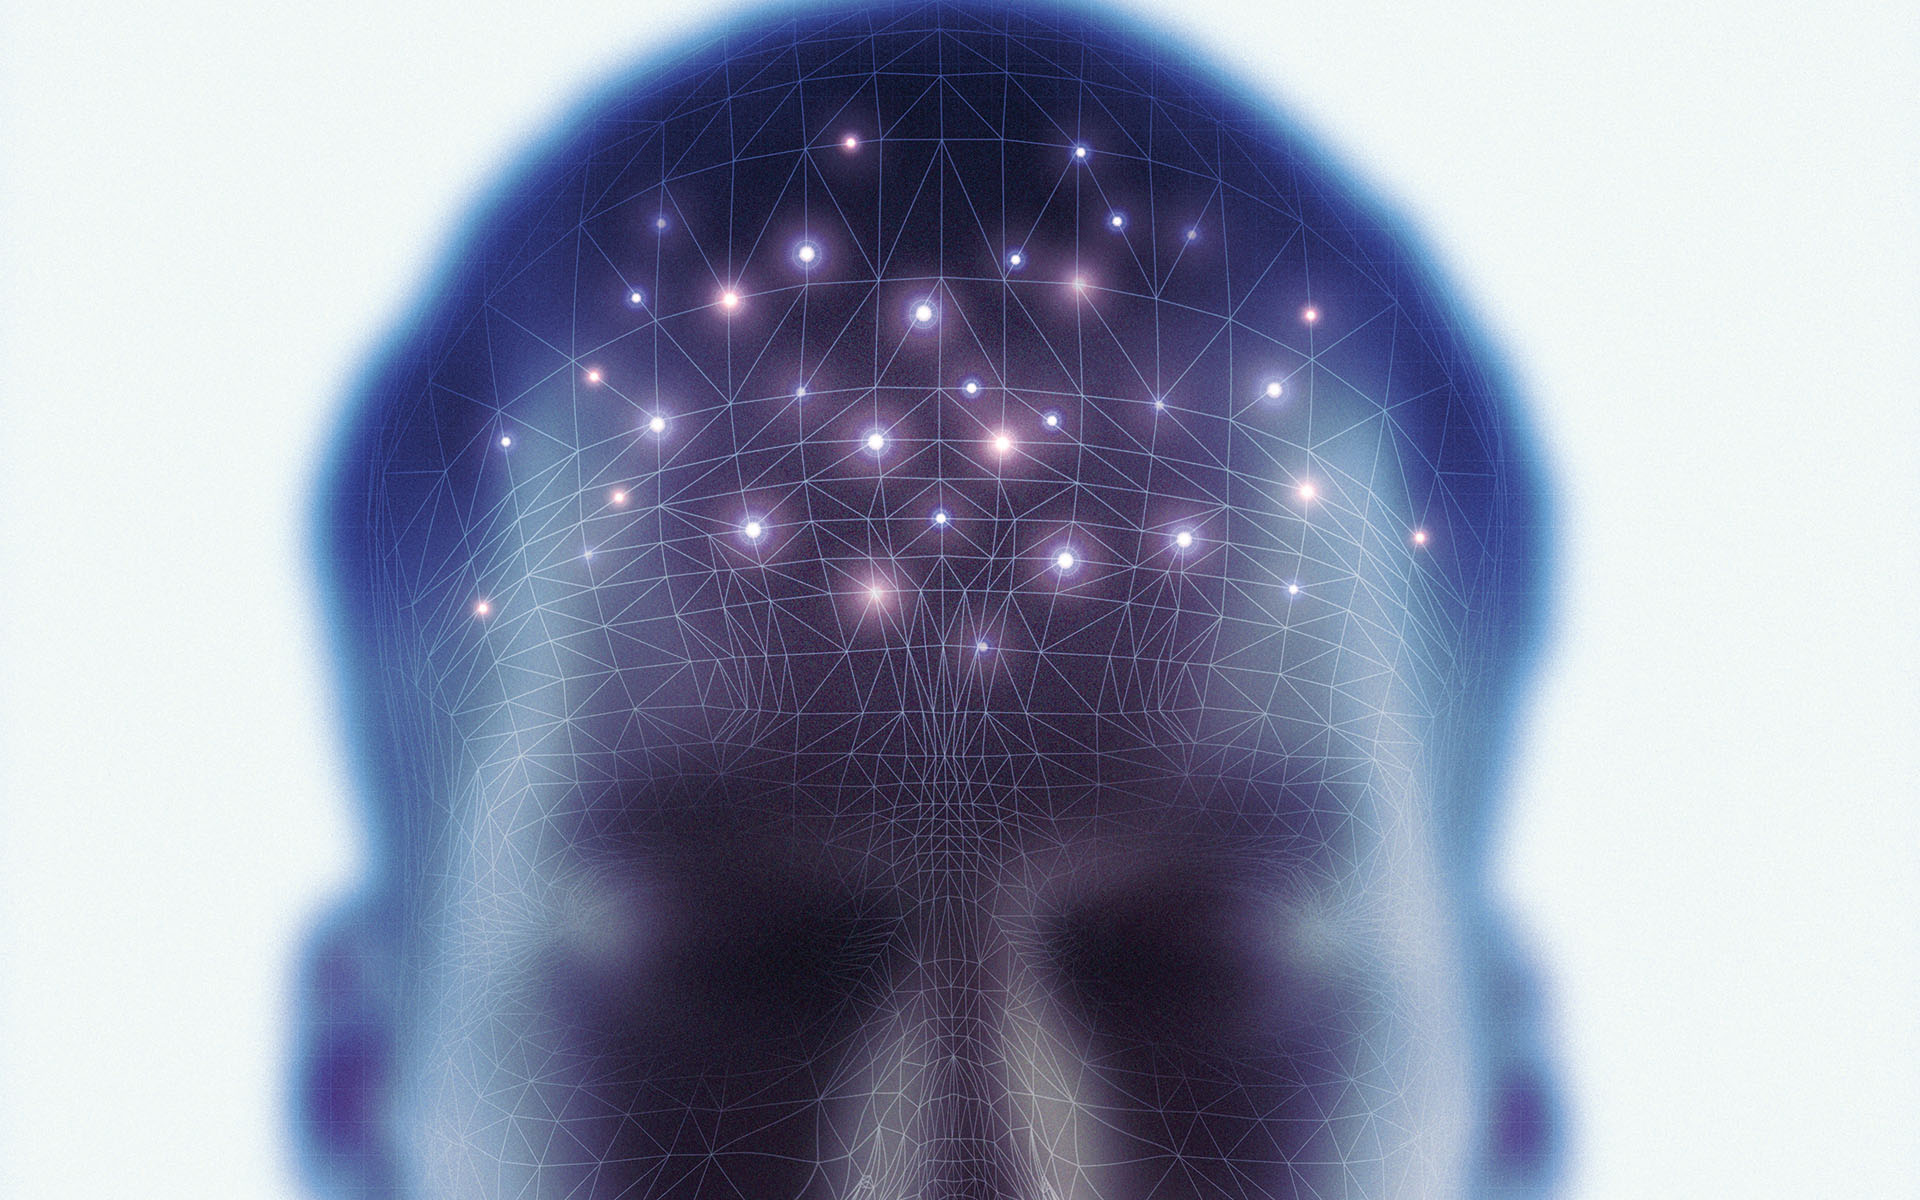 Rappresentazione di una testa con varie interconnessioni all'interno del cervello